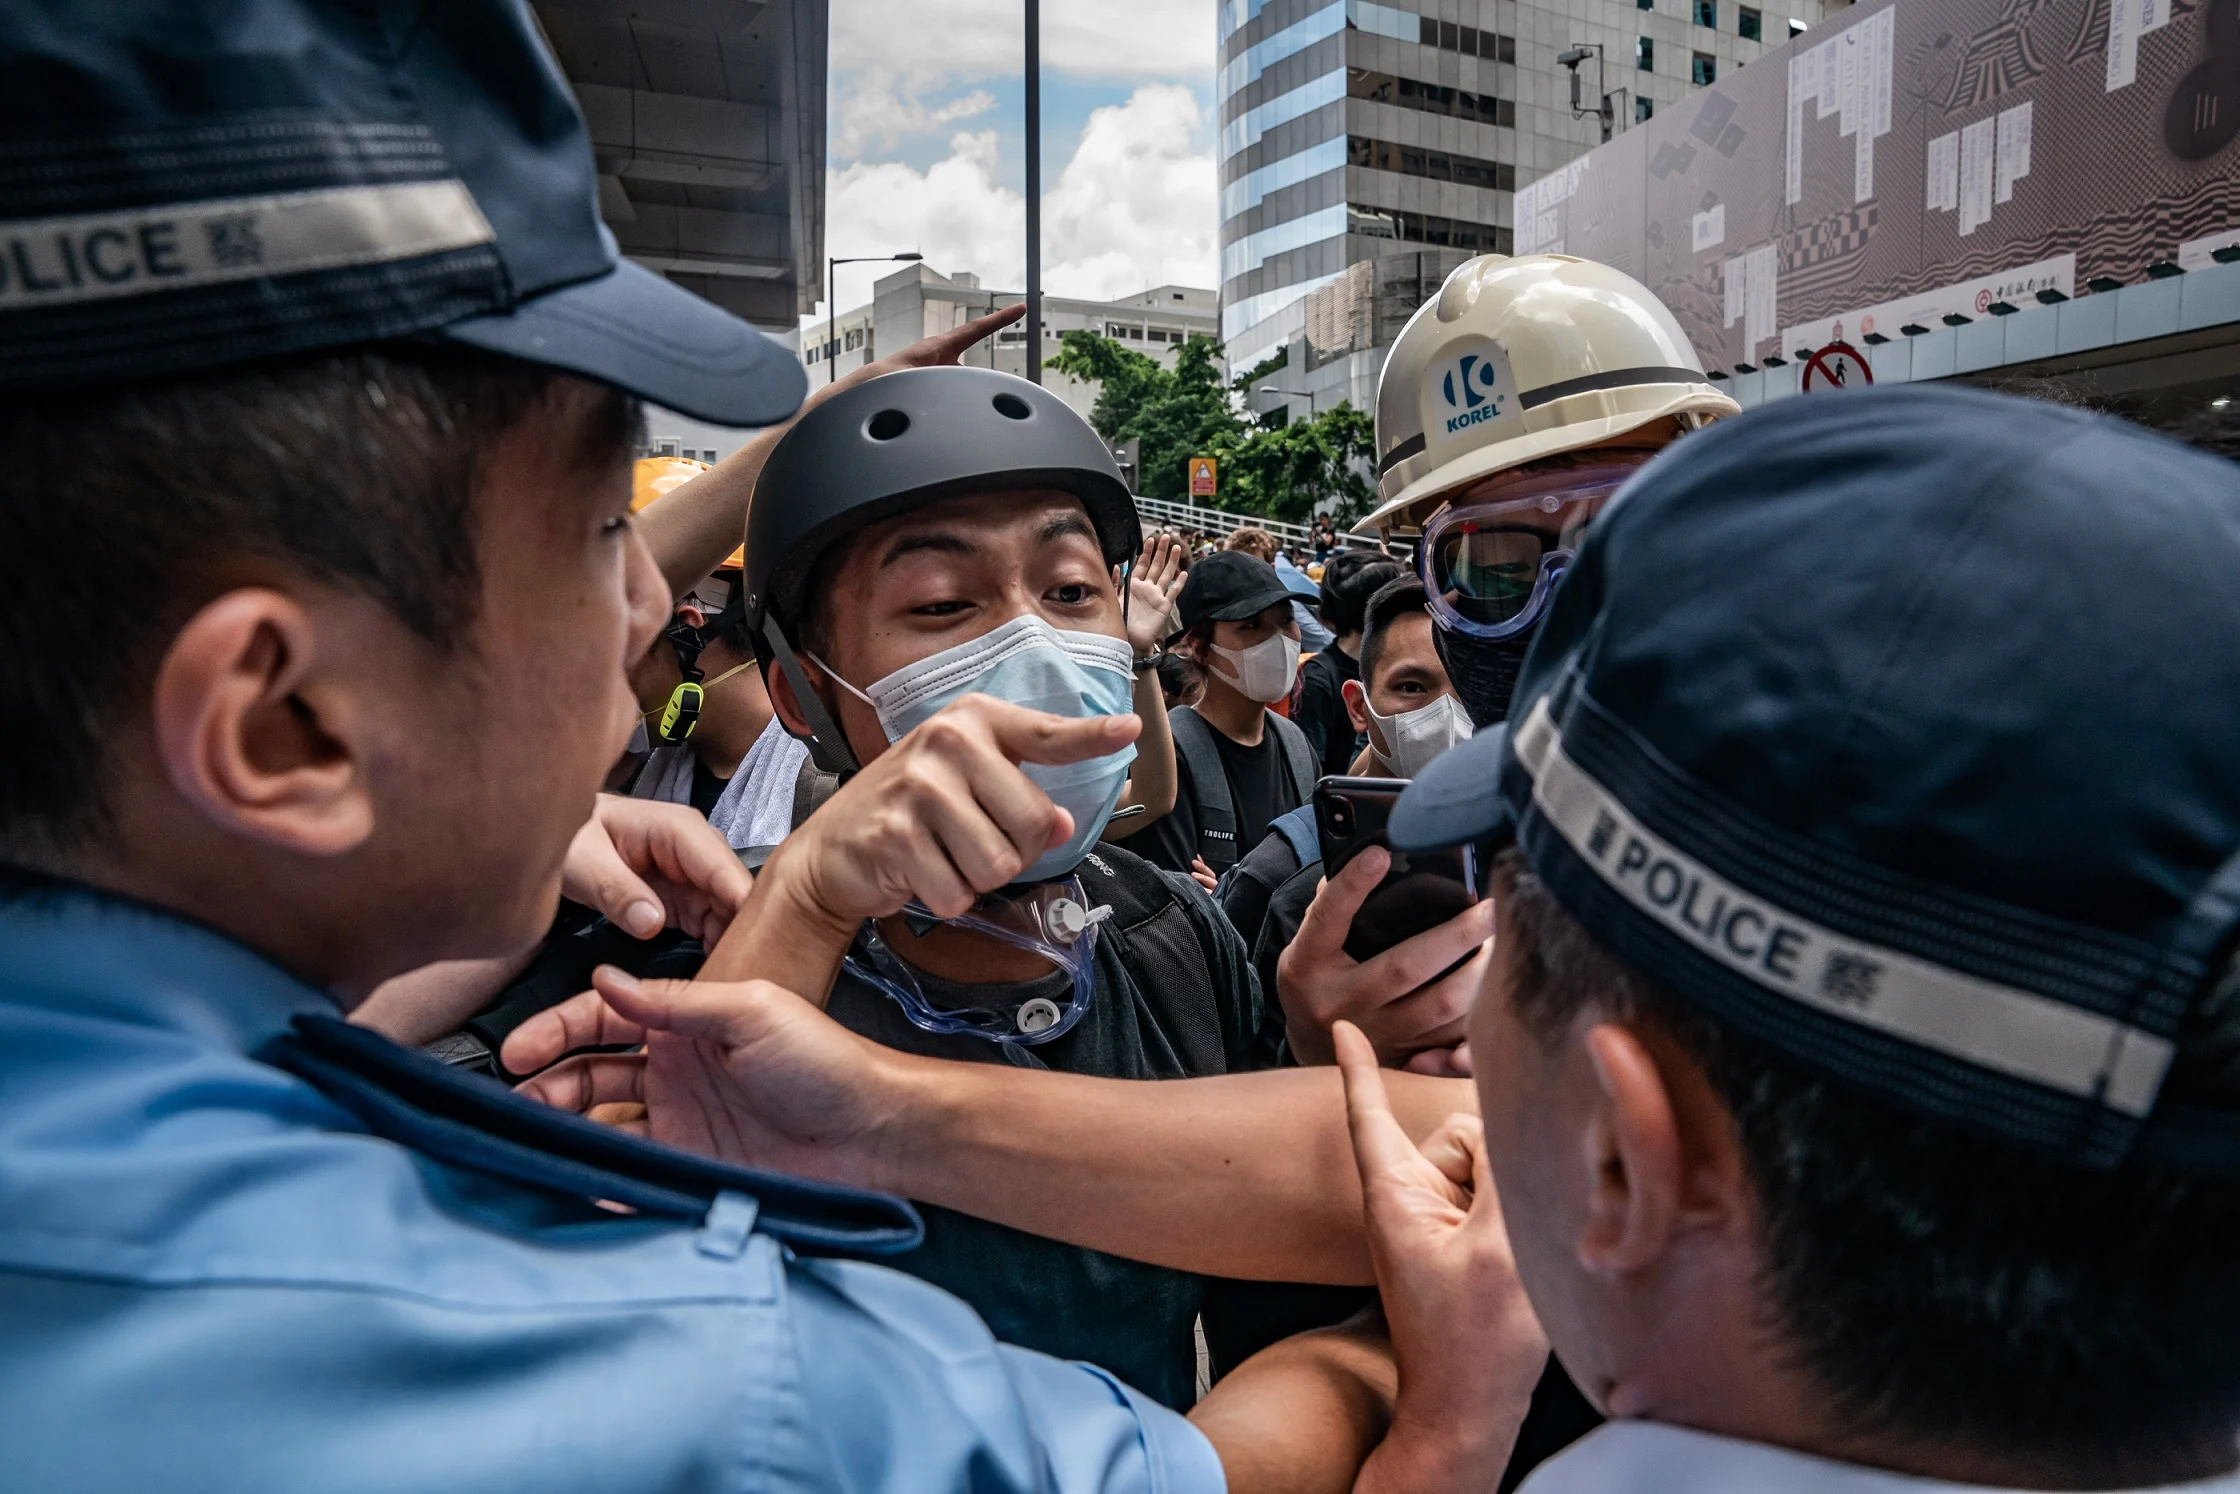 מפגין מתעמת עם שוטרים במחאה על חוק ההסגרה